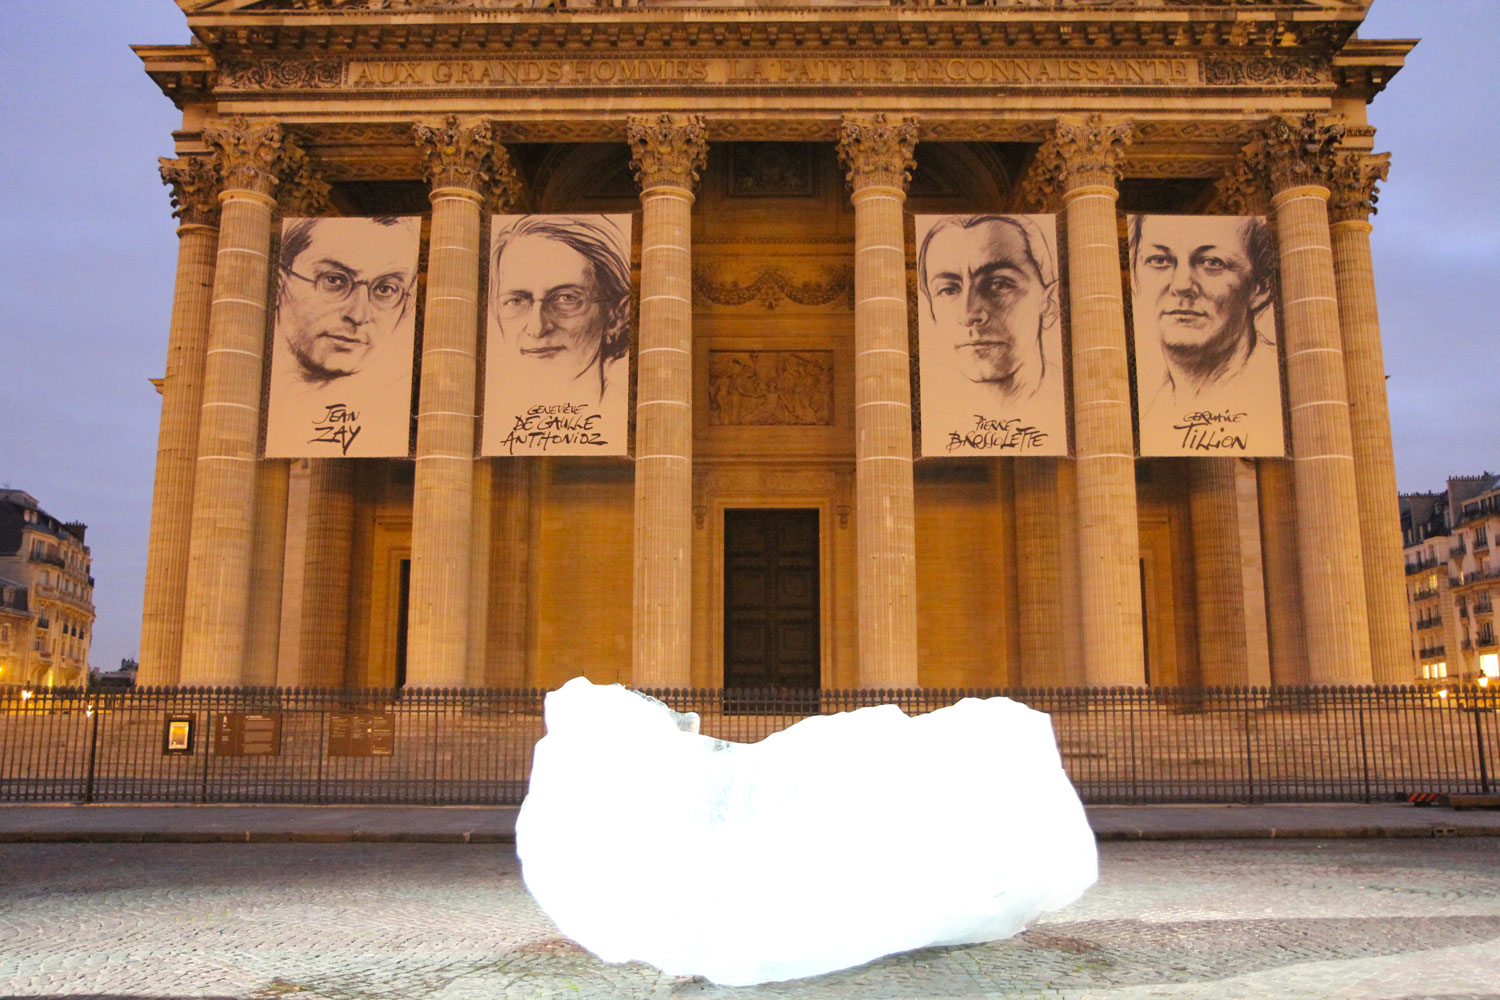 Place du Panthéon, les blocs de glace de « Ice Watch », sous le portrait des quatre dernières personnalités admises au Panthéon. Crédit Valérie Rohart